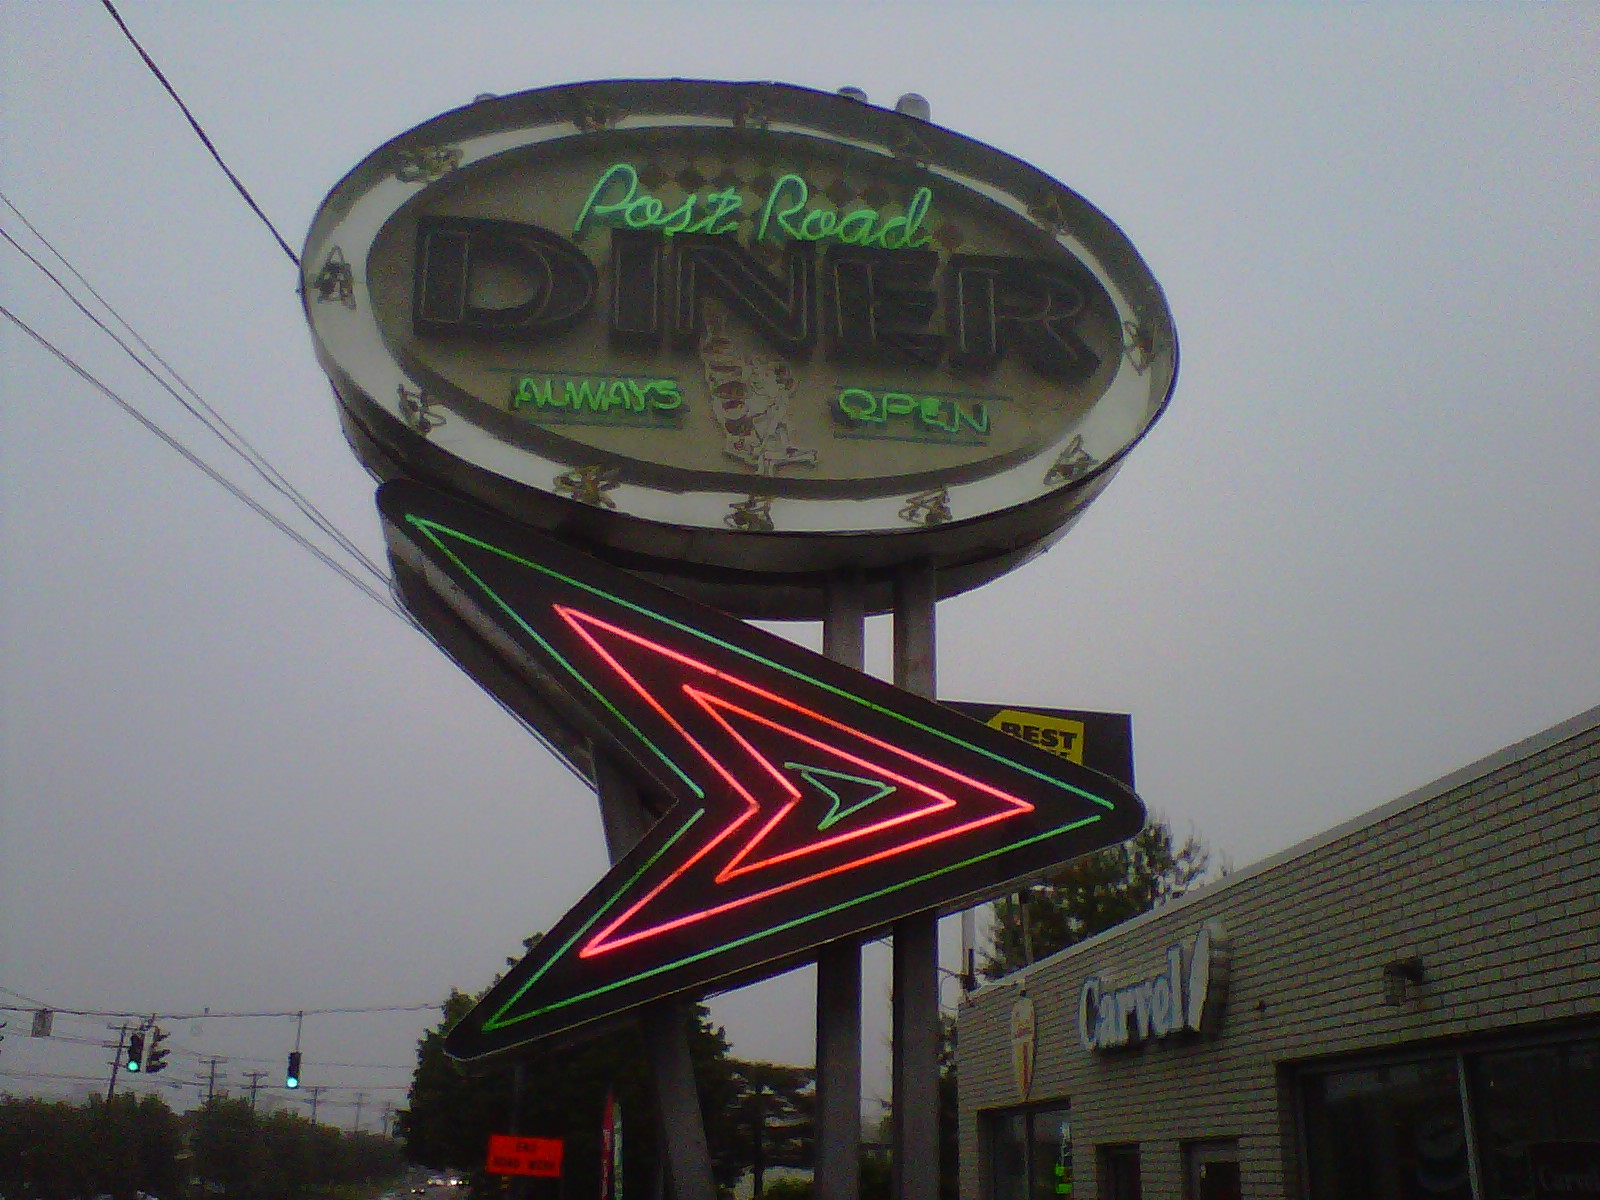 Post Road Diner - Sign